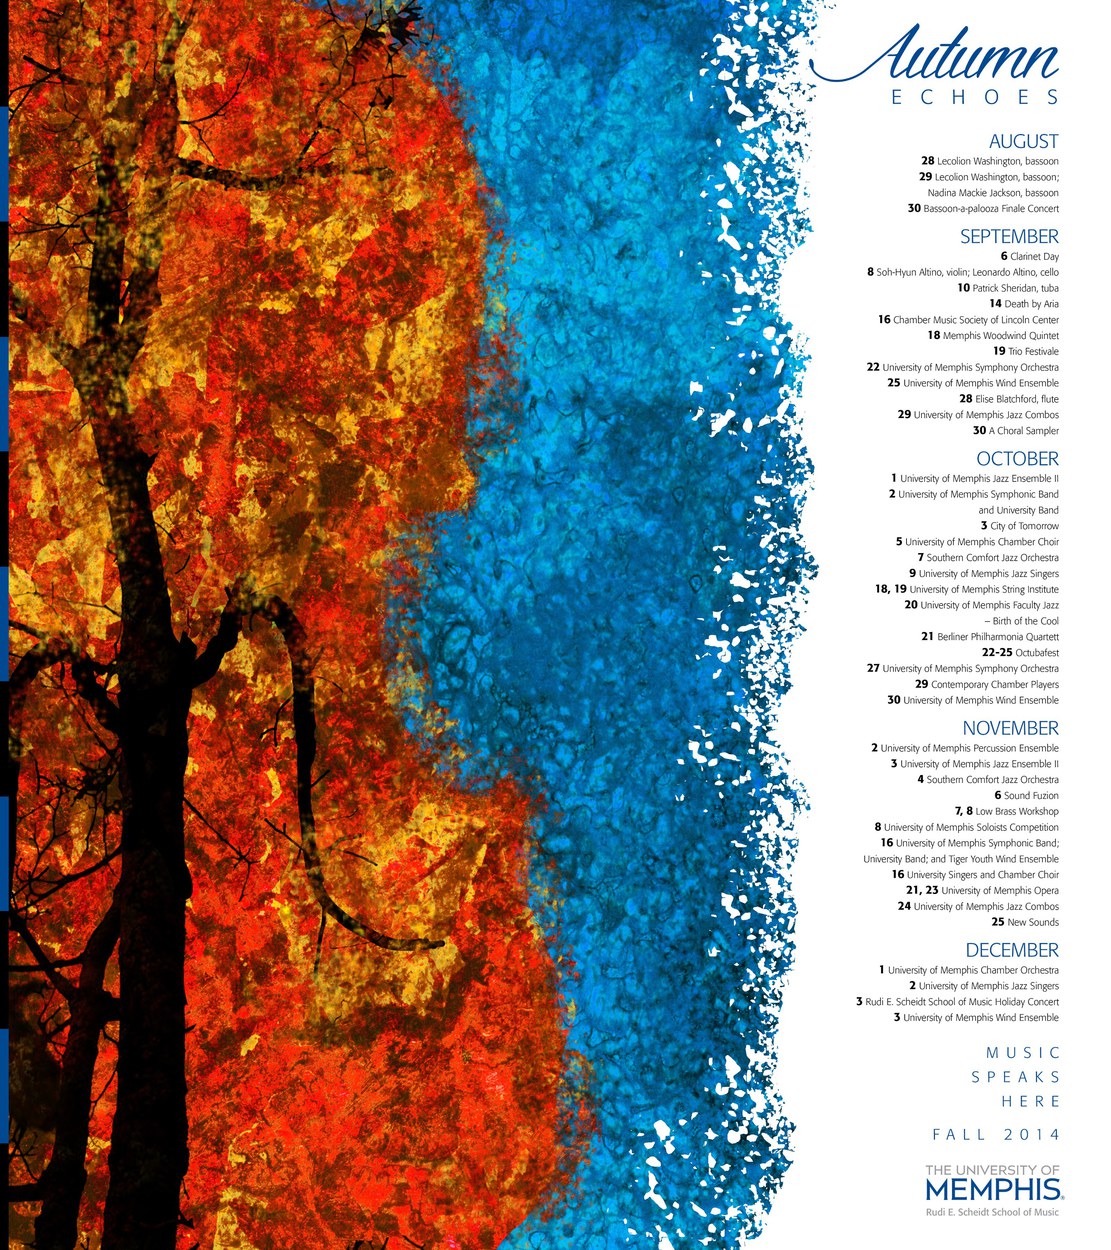 Fall music program poster; original illustration